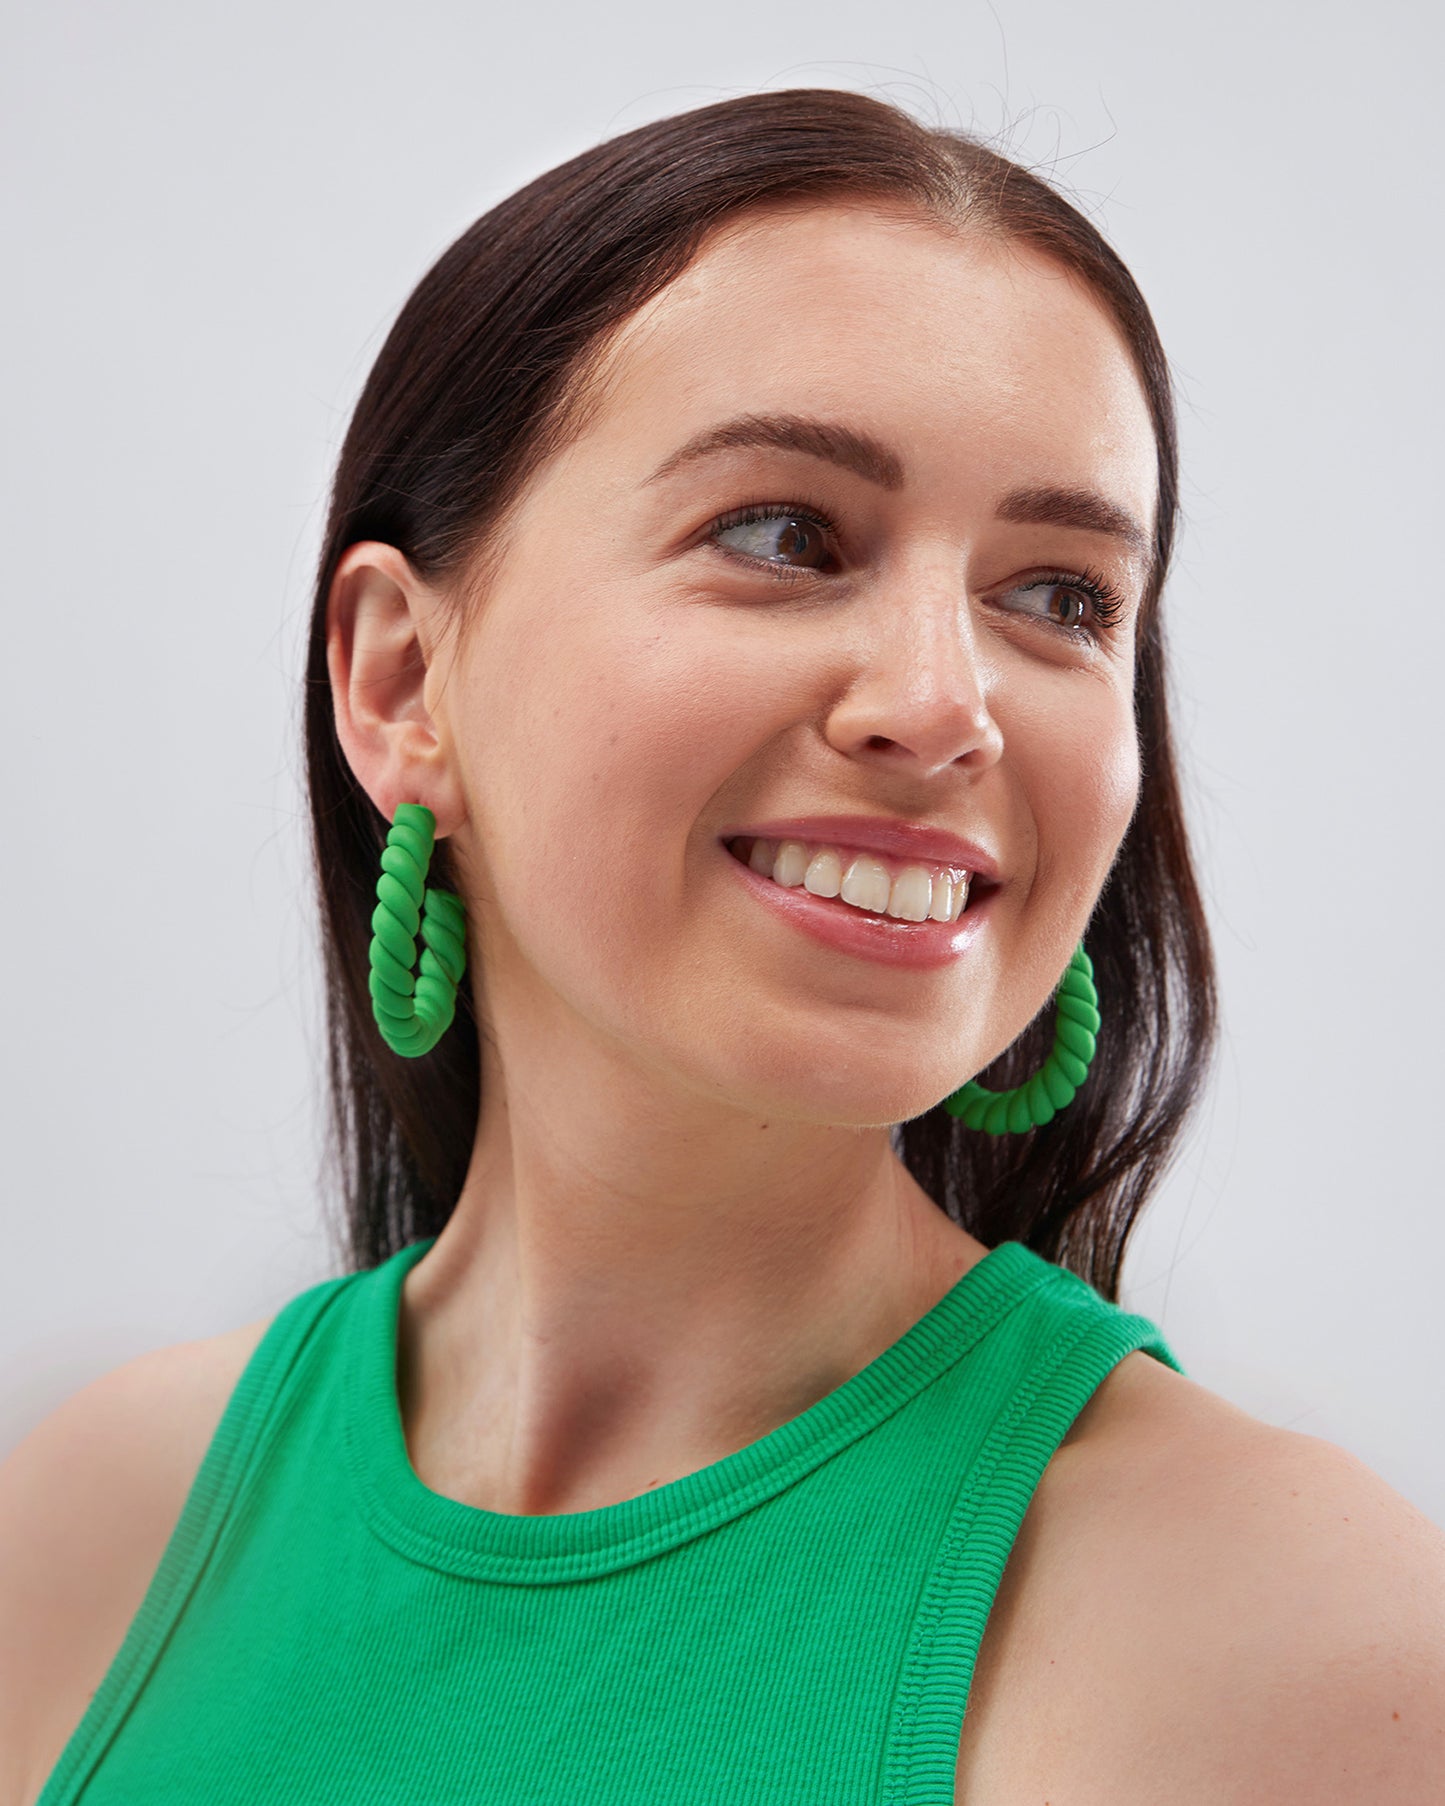 Green Earrings - Large